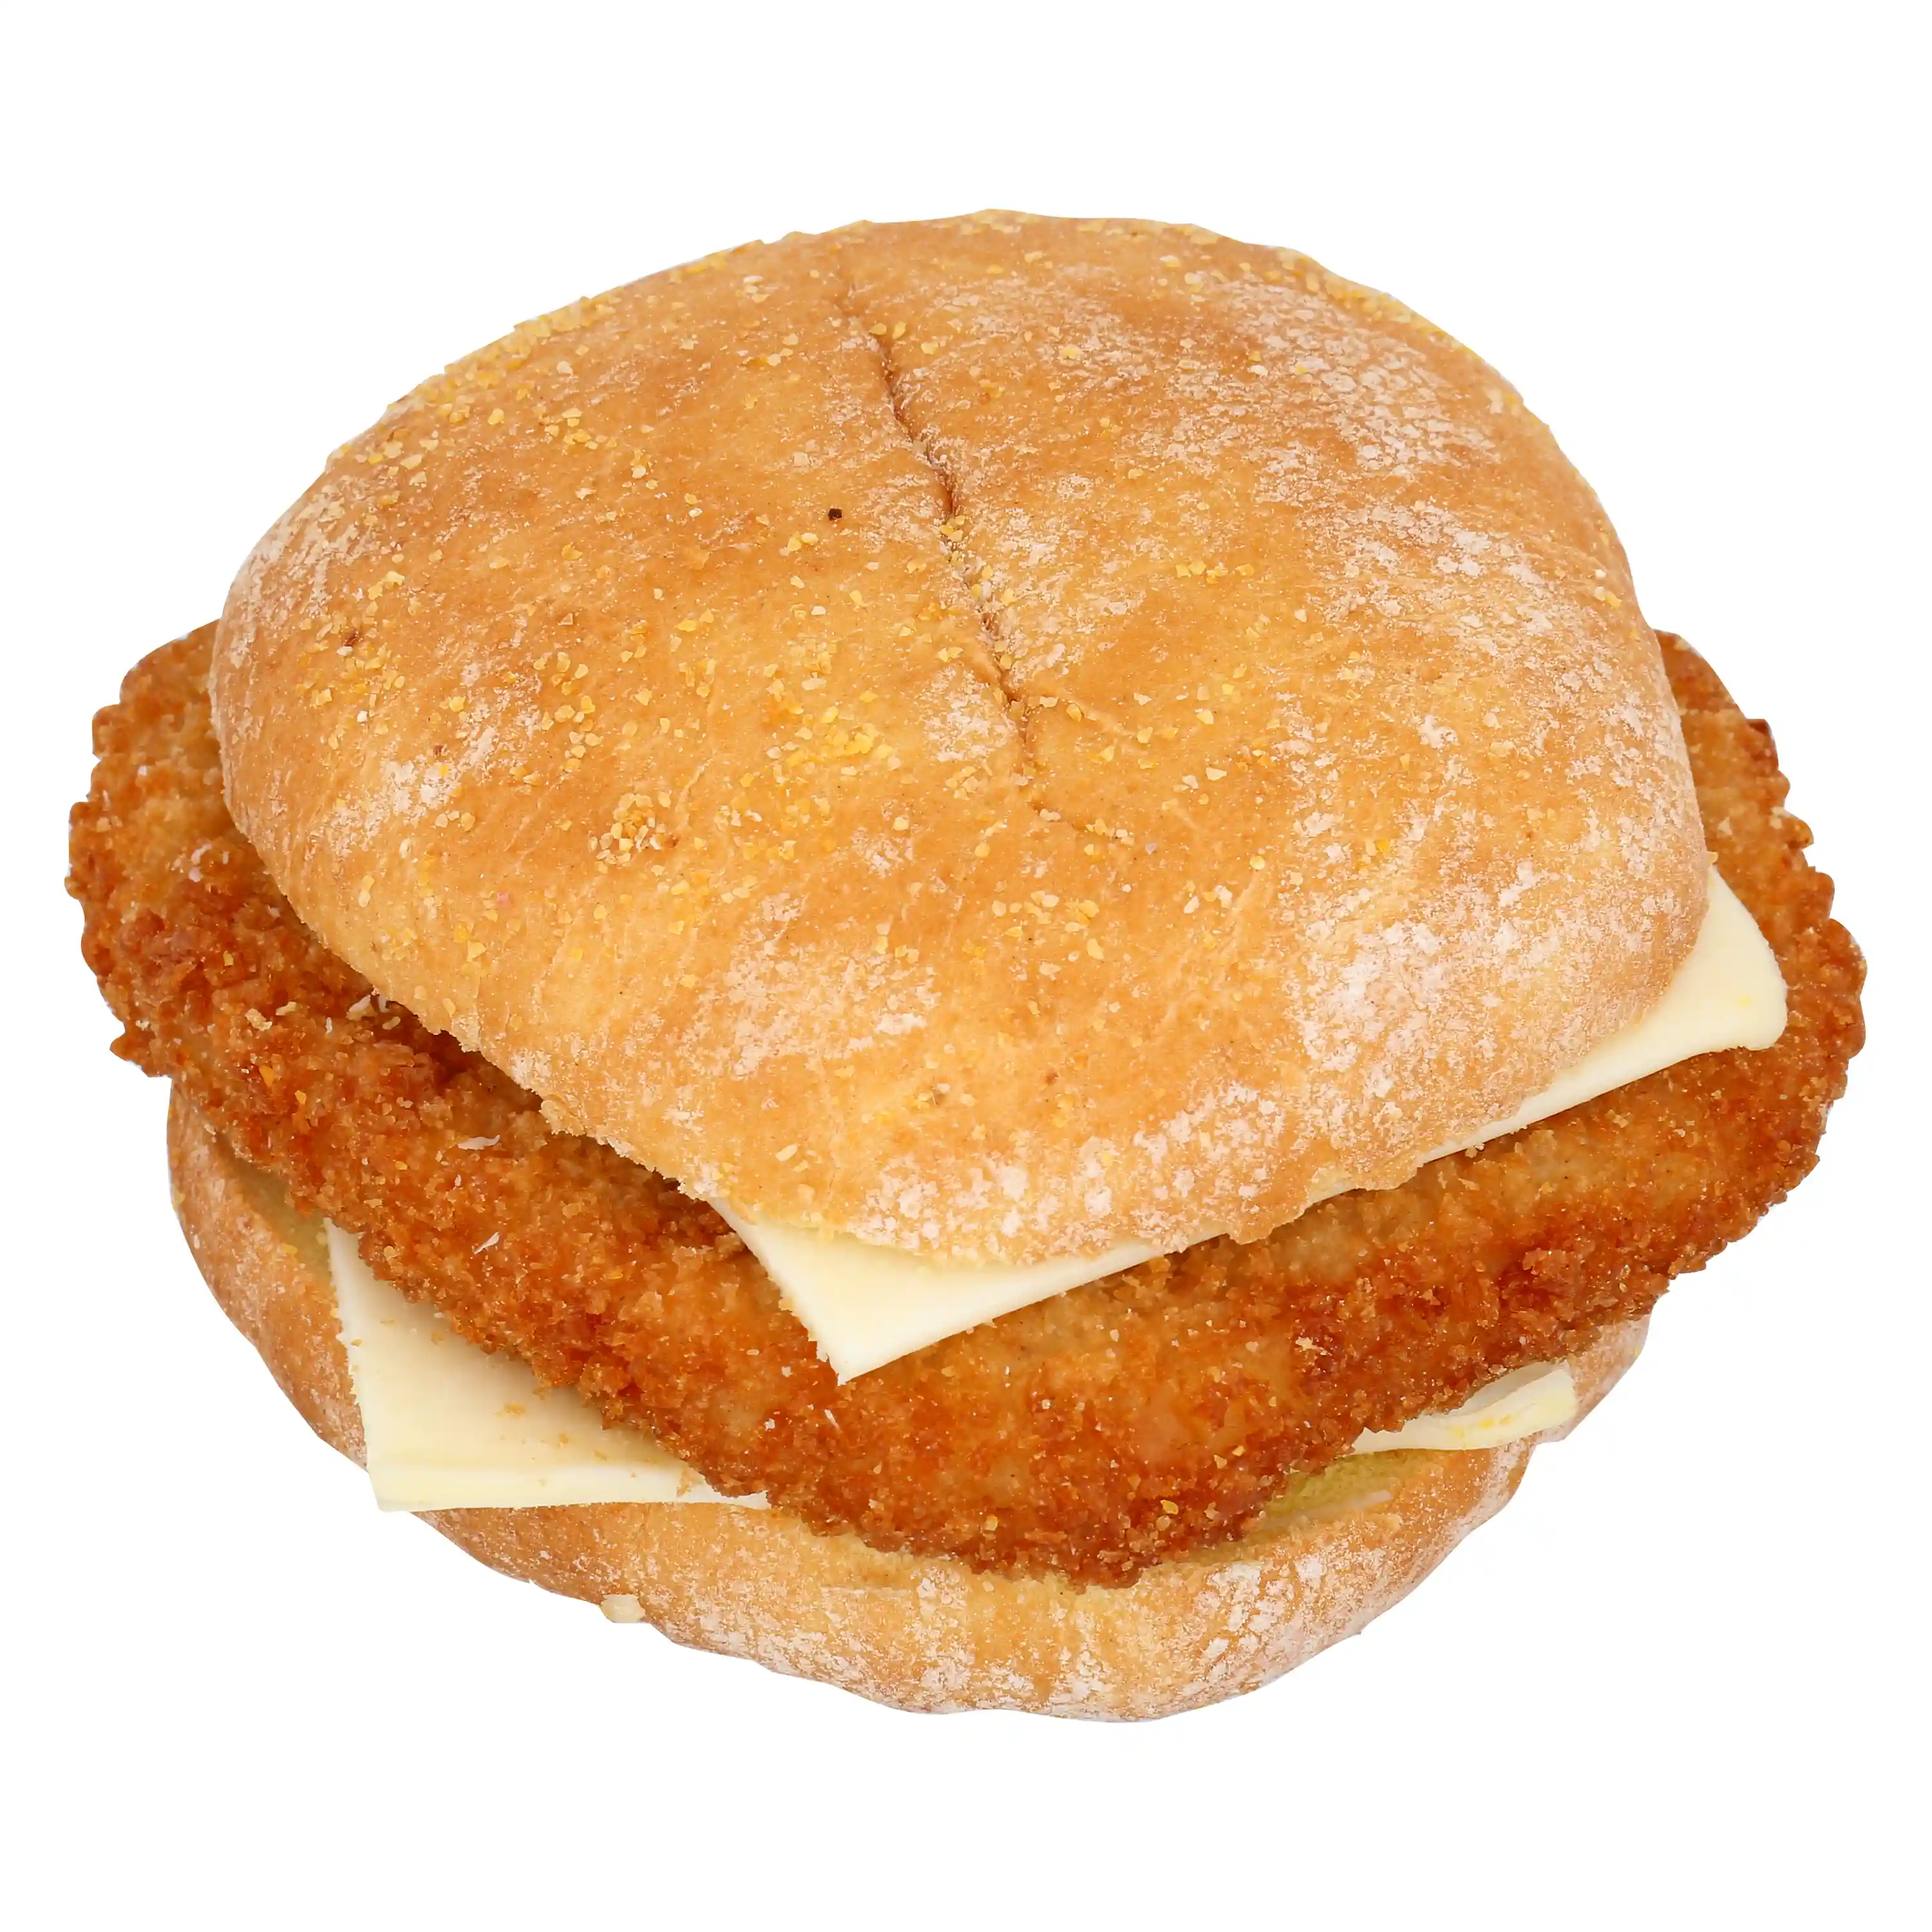 AdvancePierre™ Jumbo Southern Fried Chicken Breast Sandwich_image_11